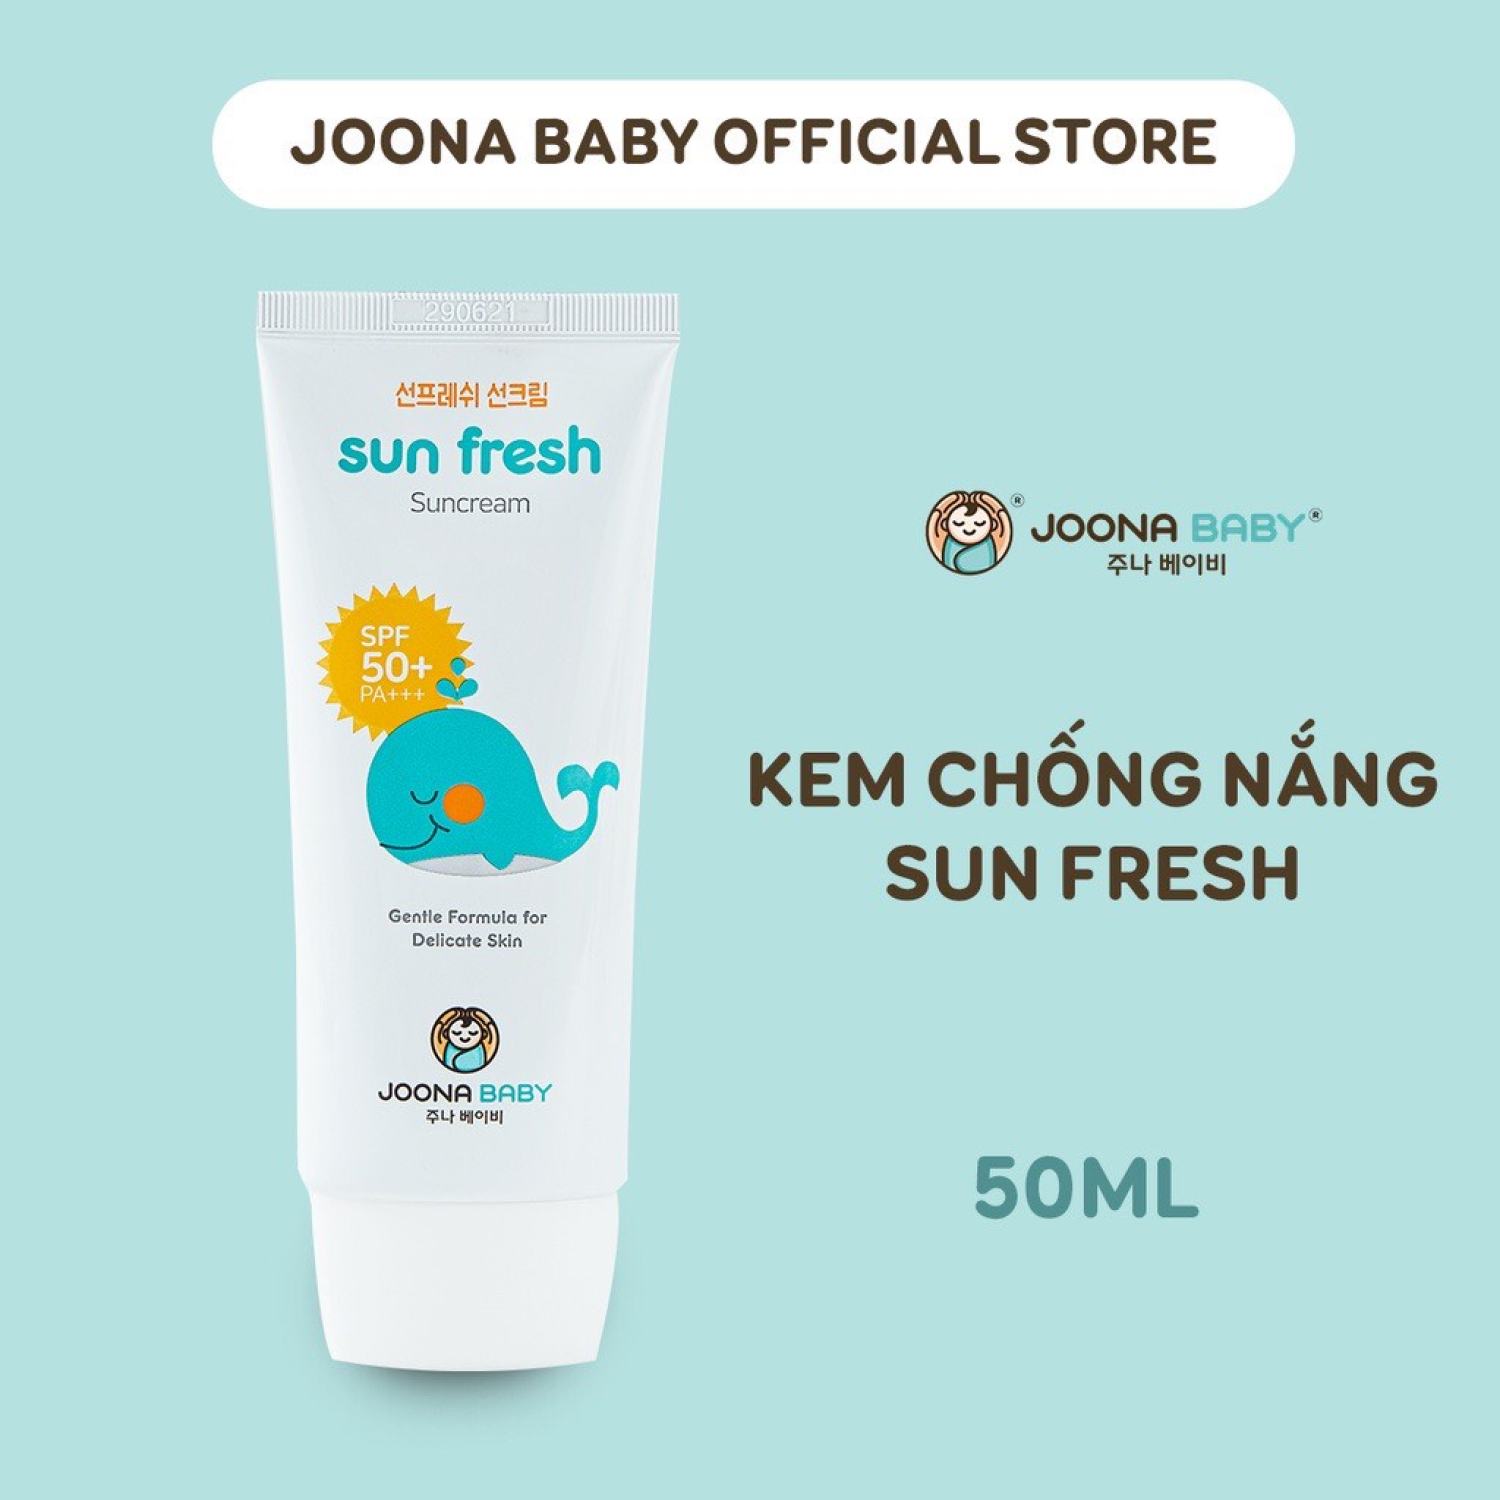 Kem chống nắng Joona Baby Sun Fresh 50ml cho bé từ 6 tháng